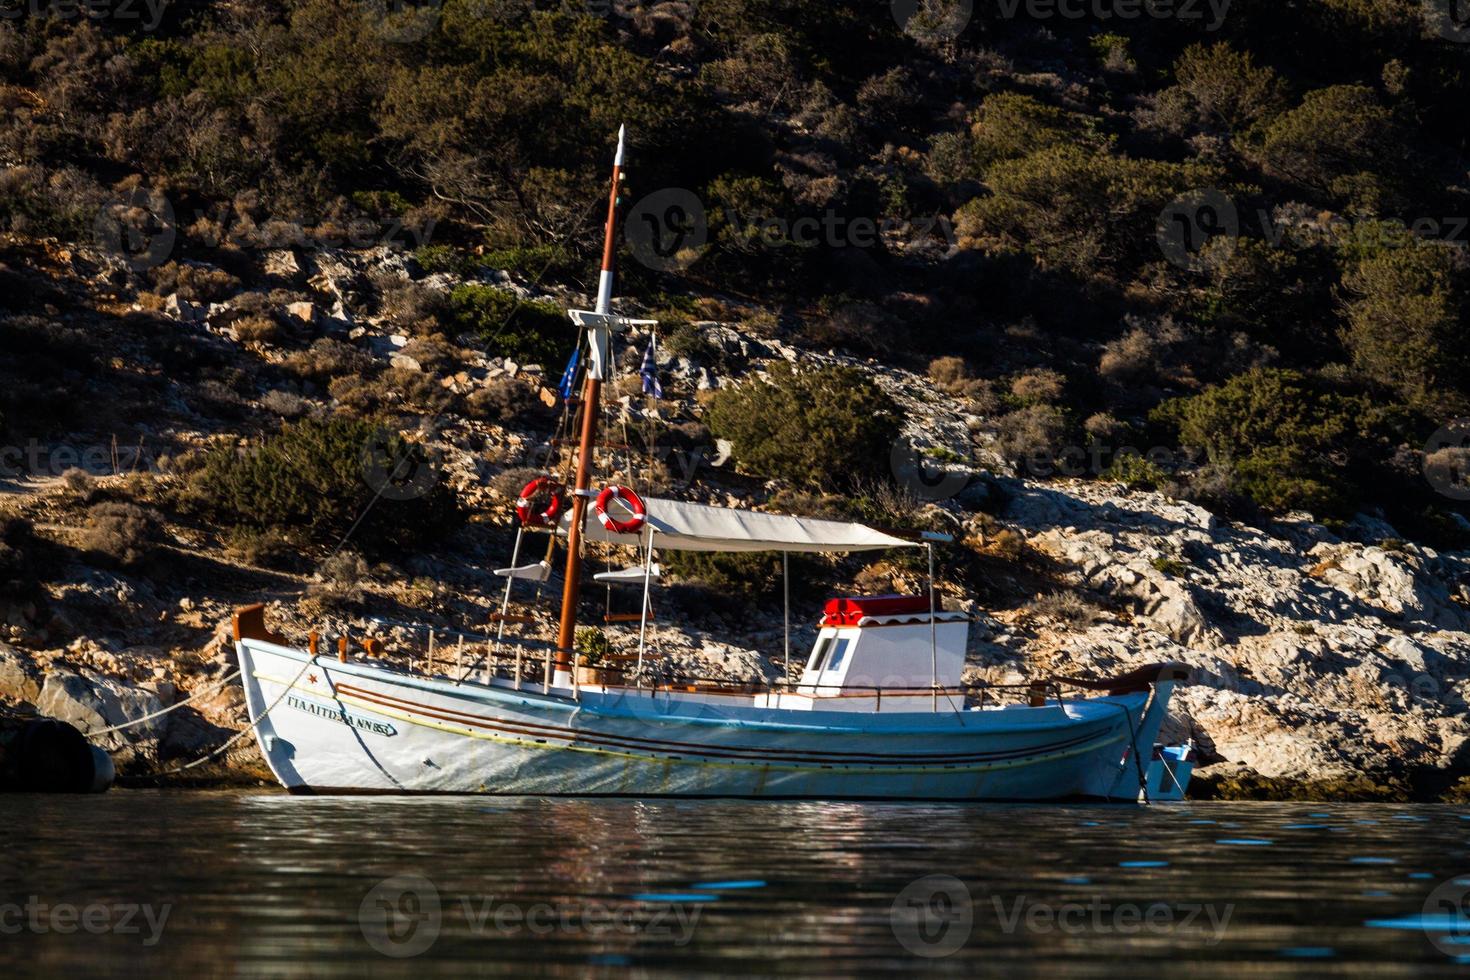 tradizionale pescatore Barche di Grecia foto